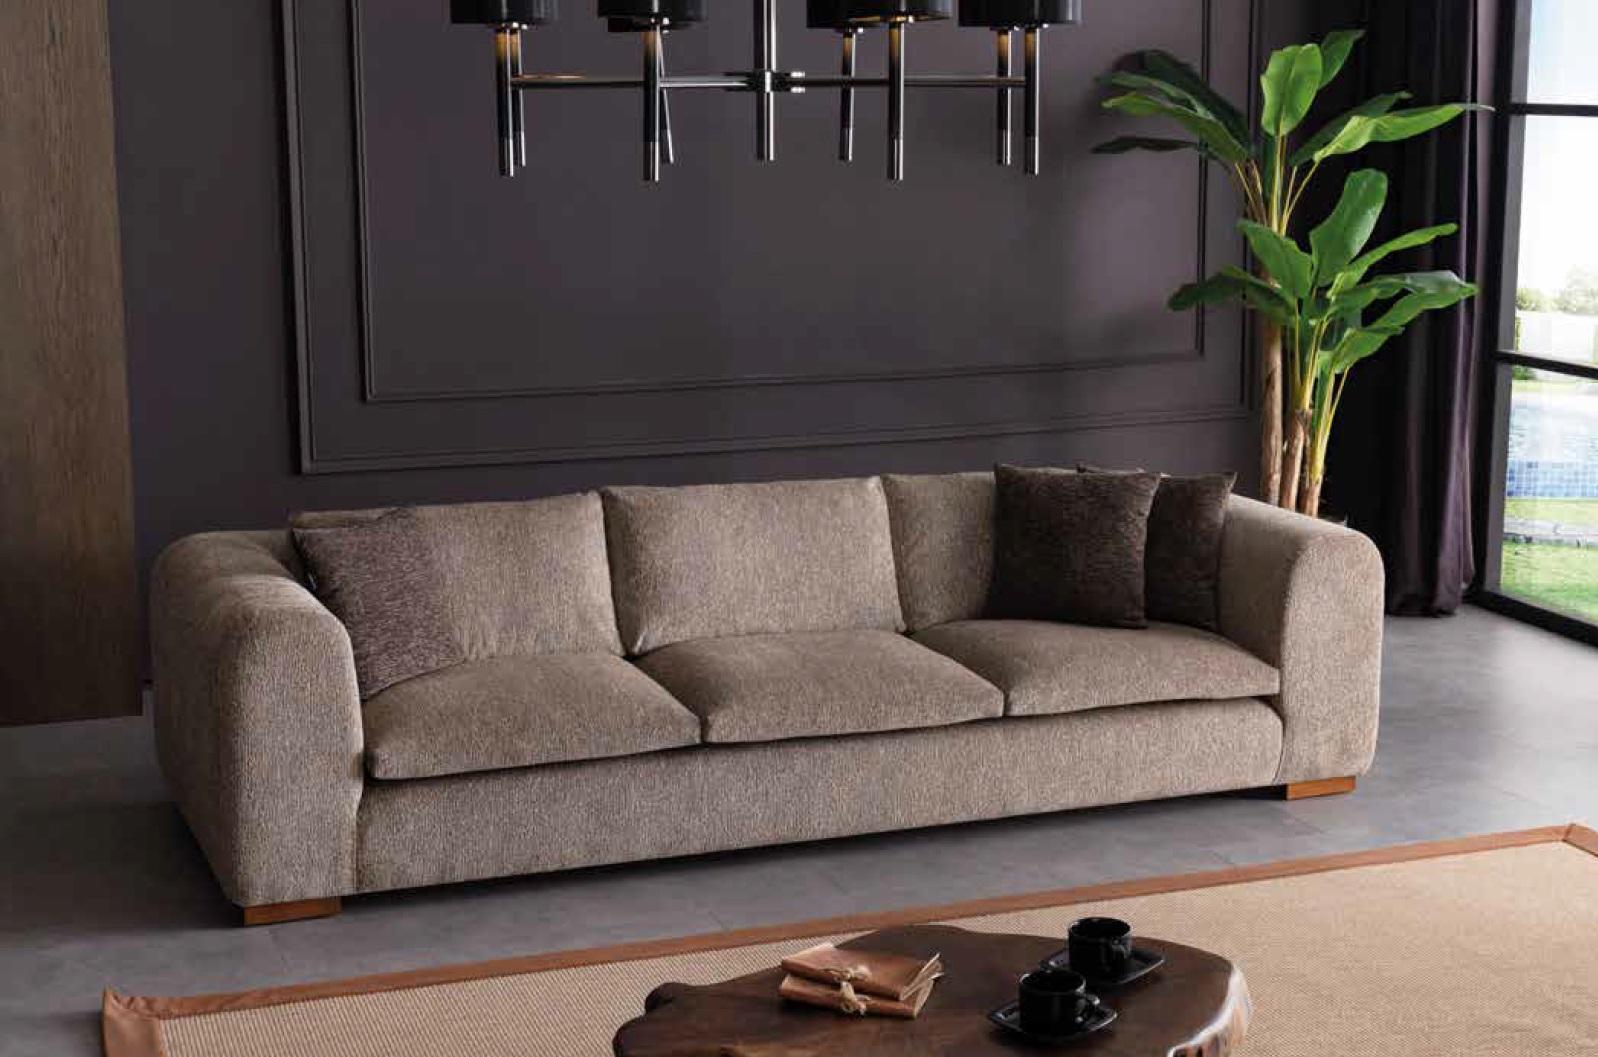 Big Sofa Couch 280cm Möbel Wohnzimmer Couchen Stoff Textil Sofas xxl